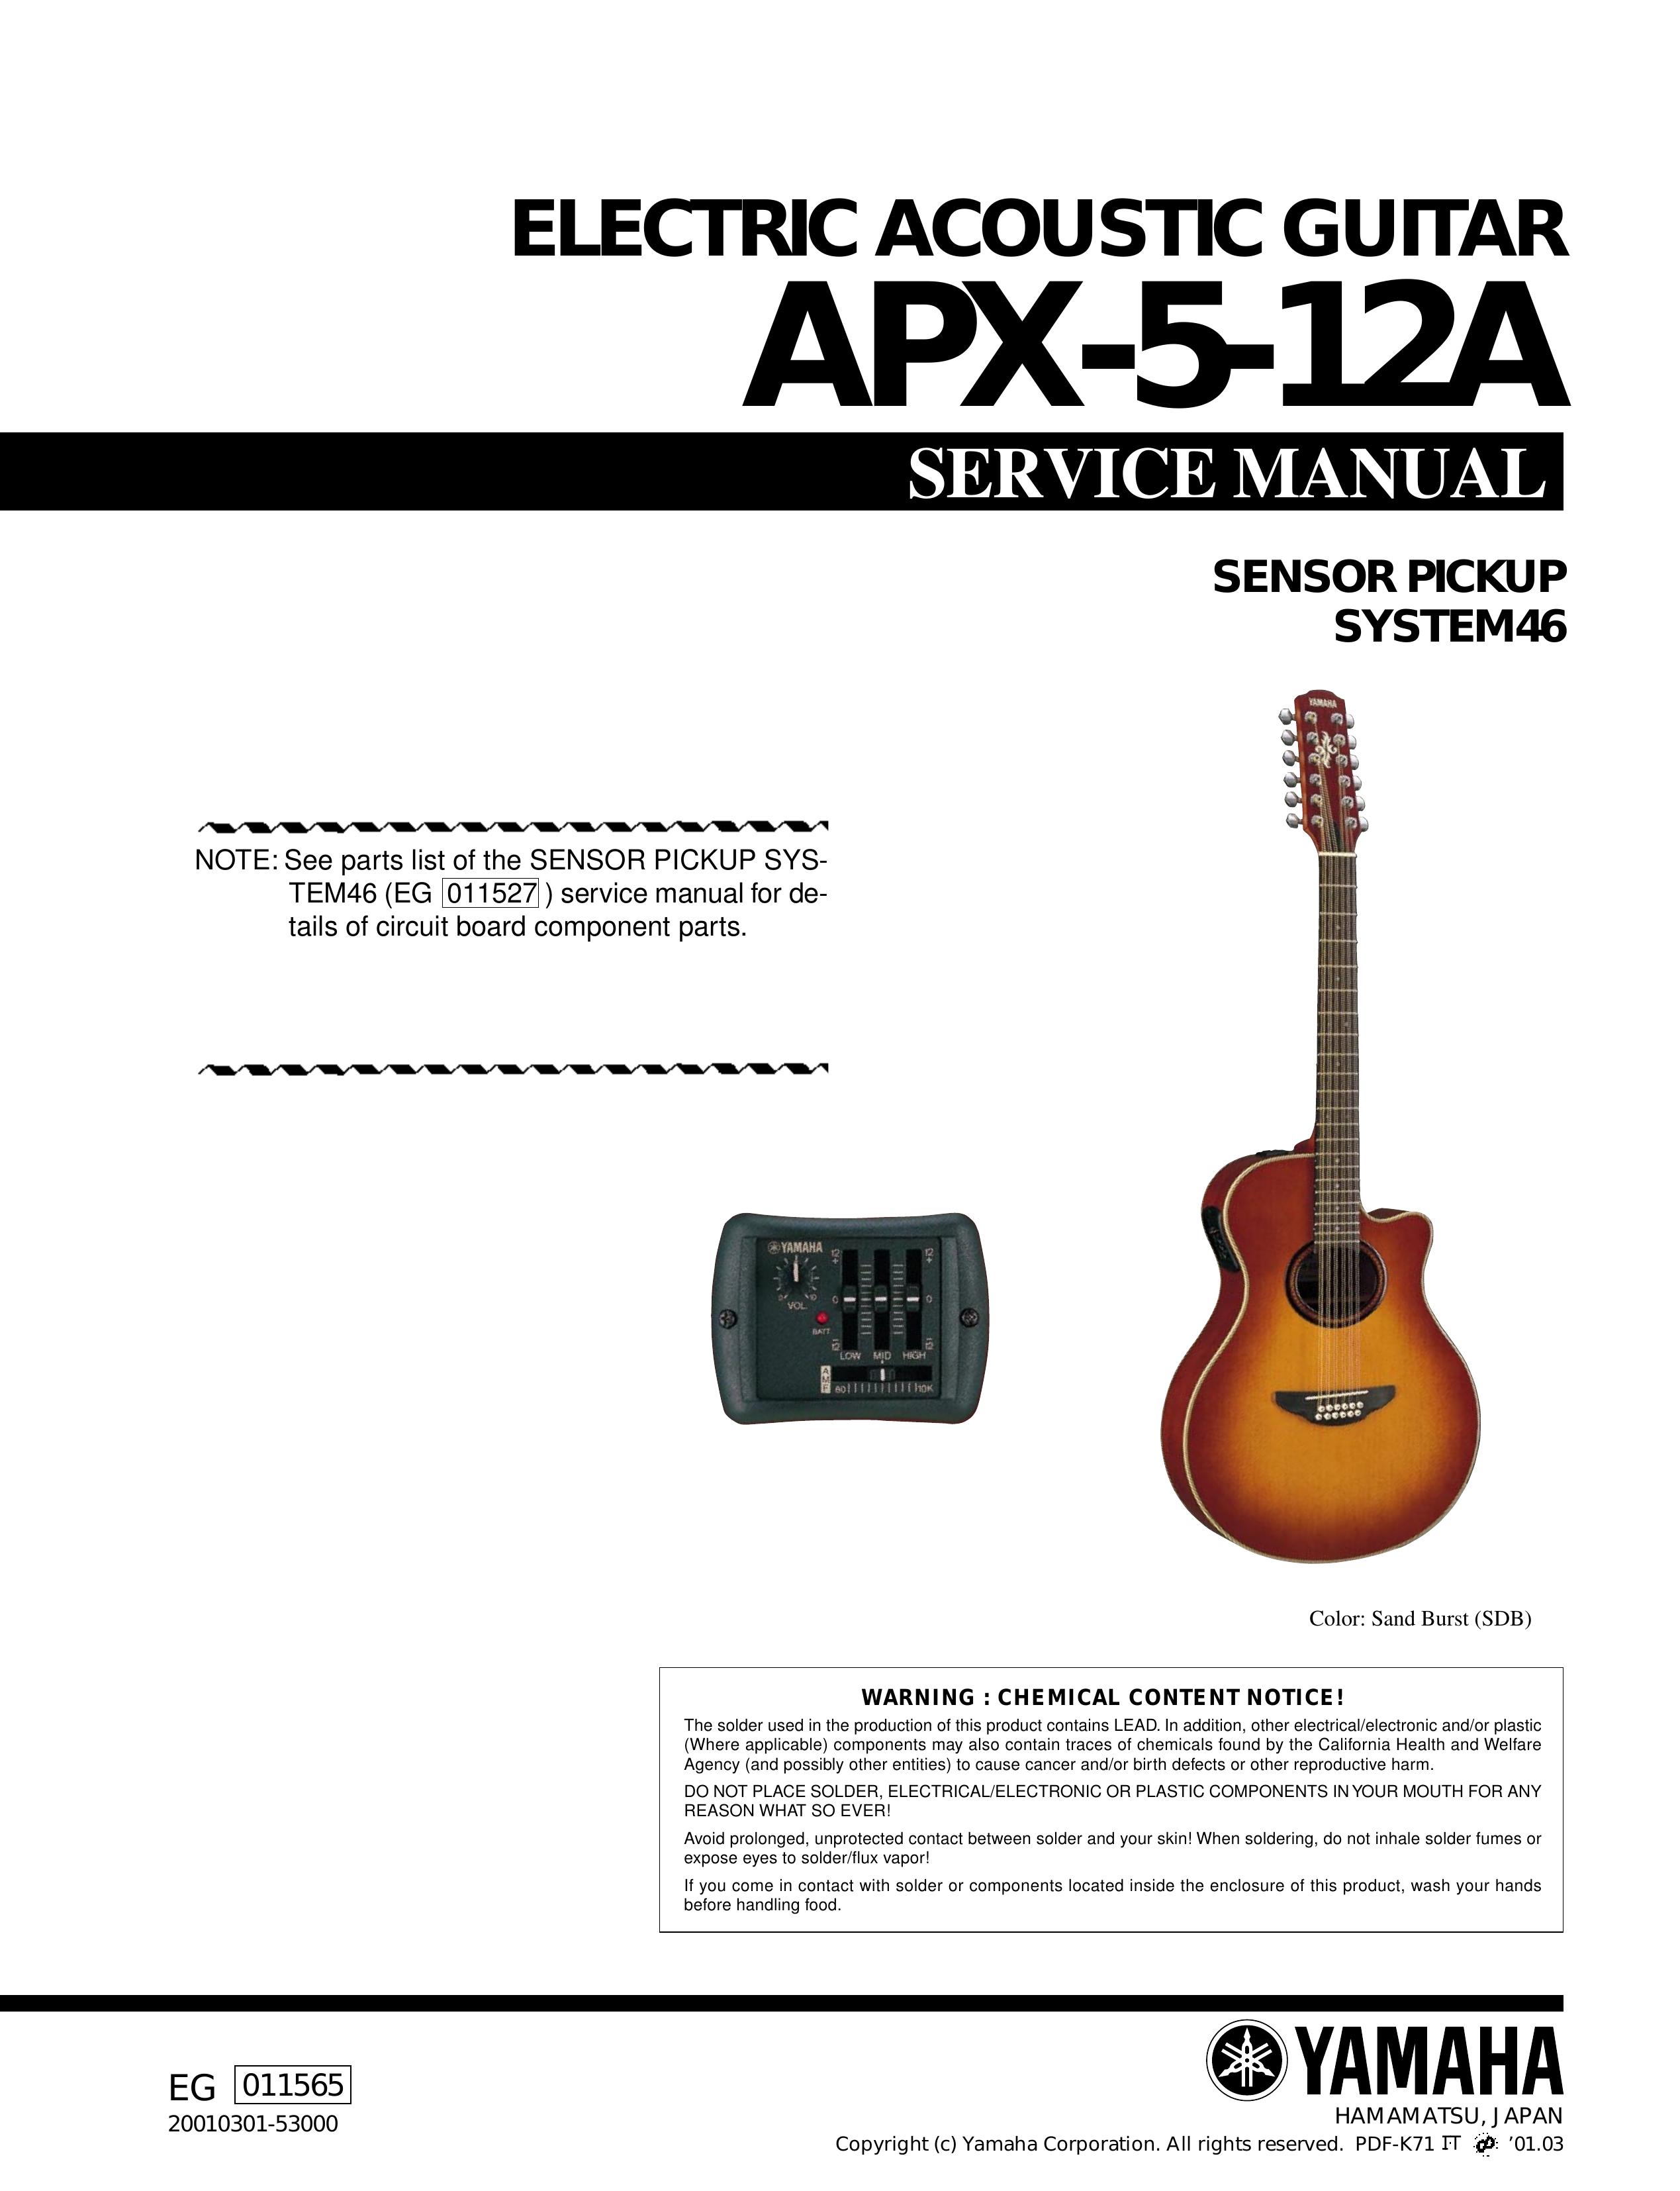 Yamaha APX-5-12A Guitar User Manual